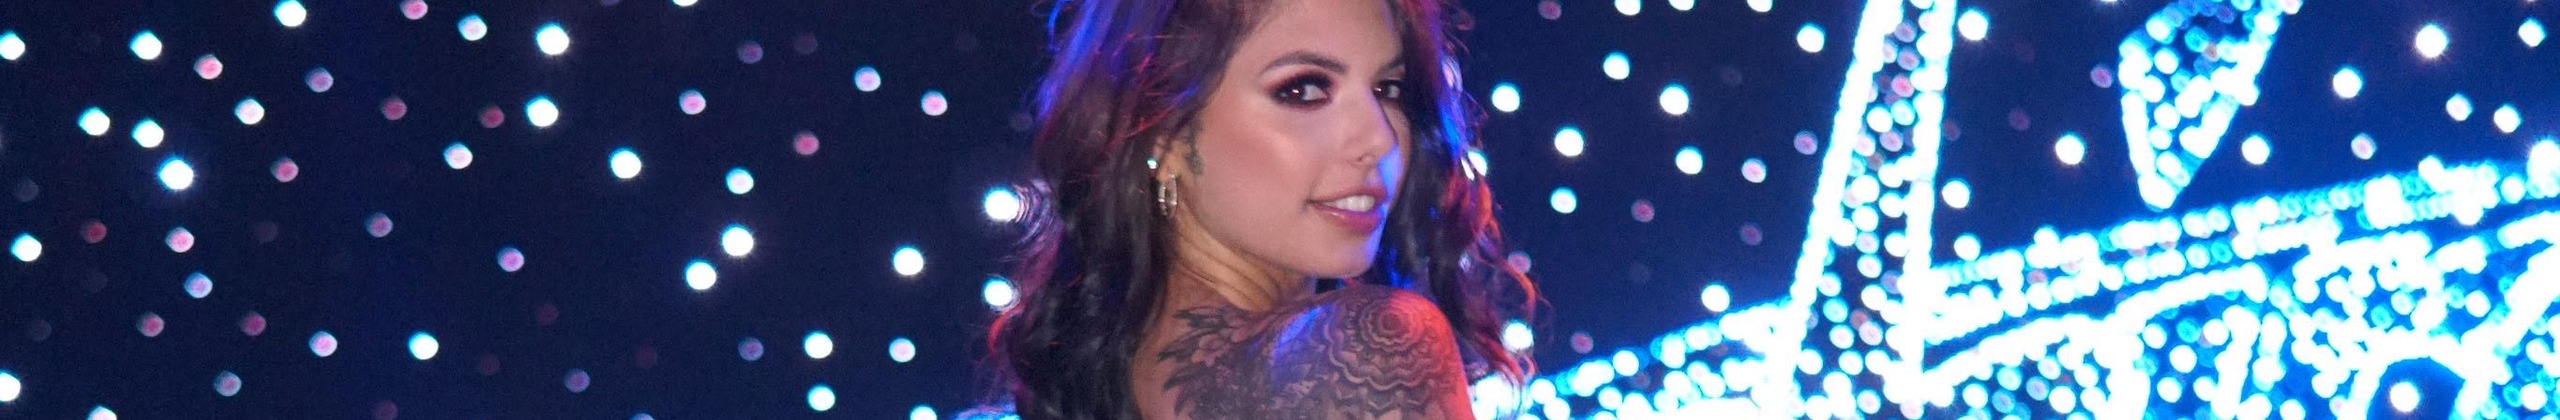 gina Valentina - profile image